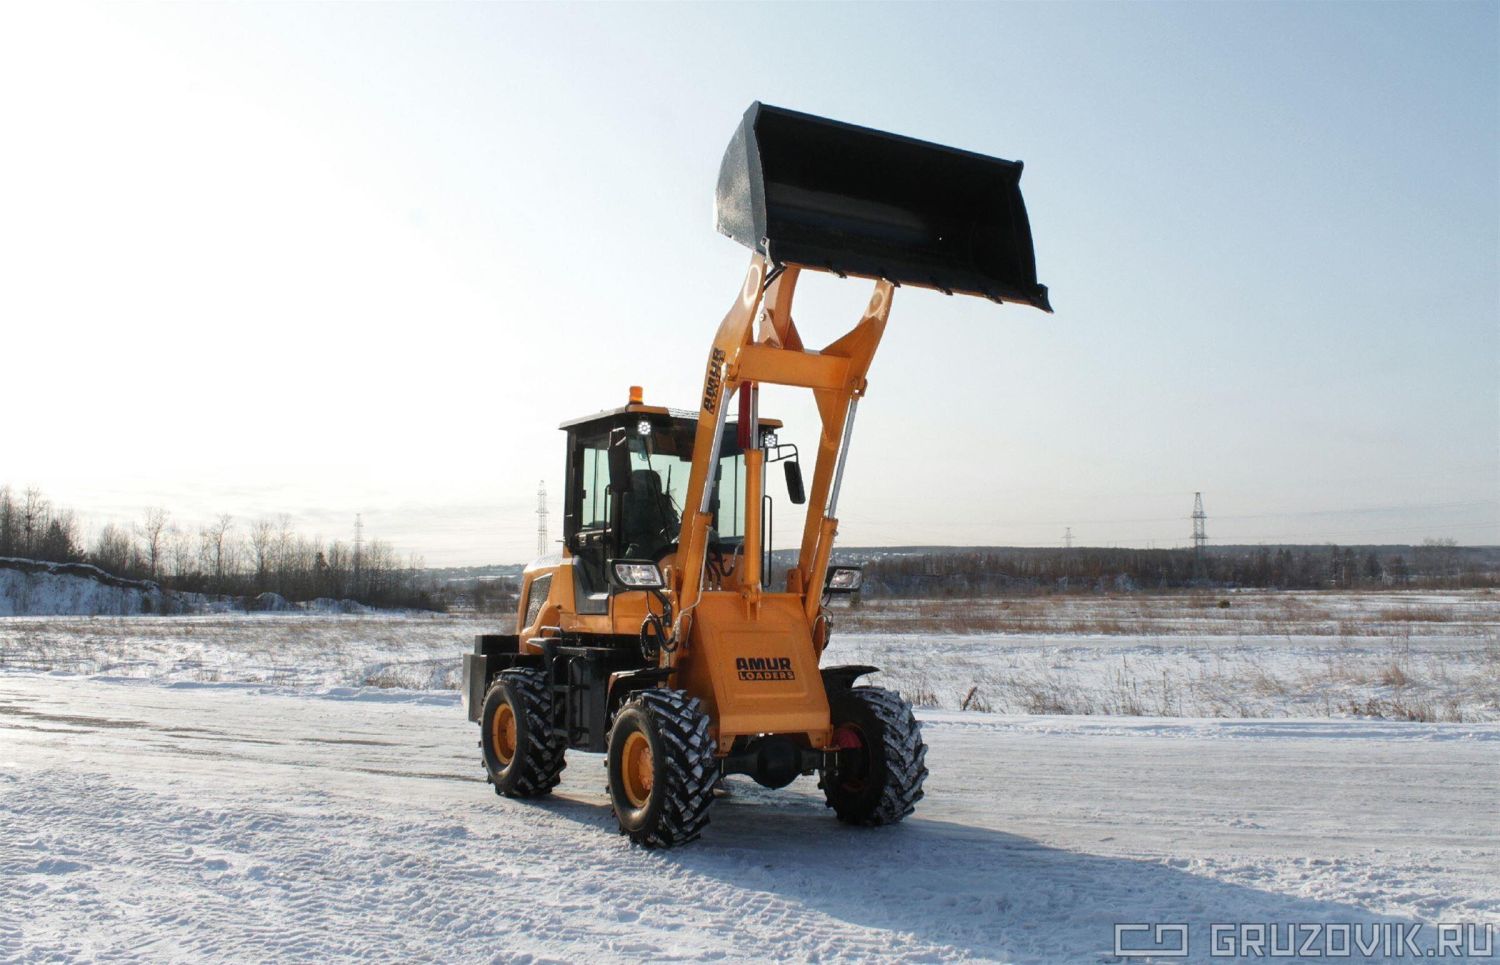 Новый Фронтальный погрузчик Amur DK620M в продаже  на Gruzovik.ru, 1 314 665 ₽